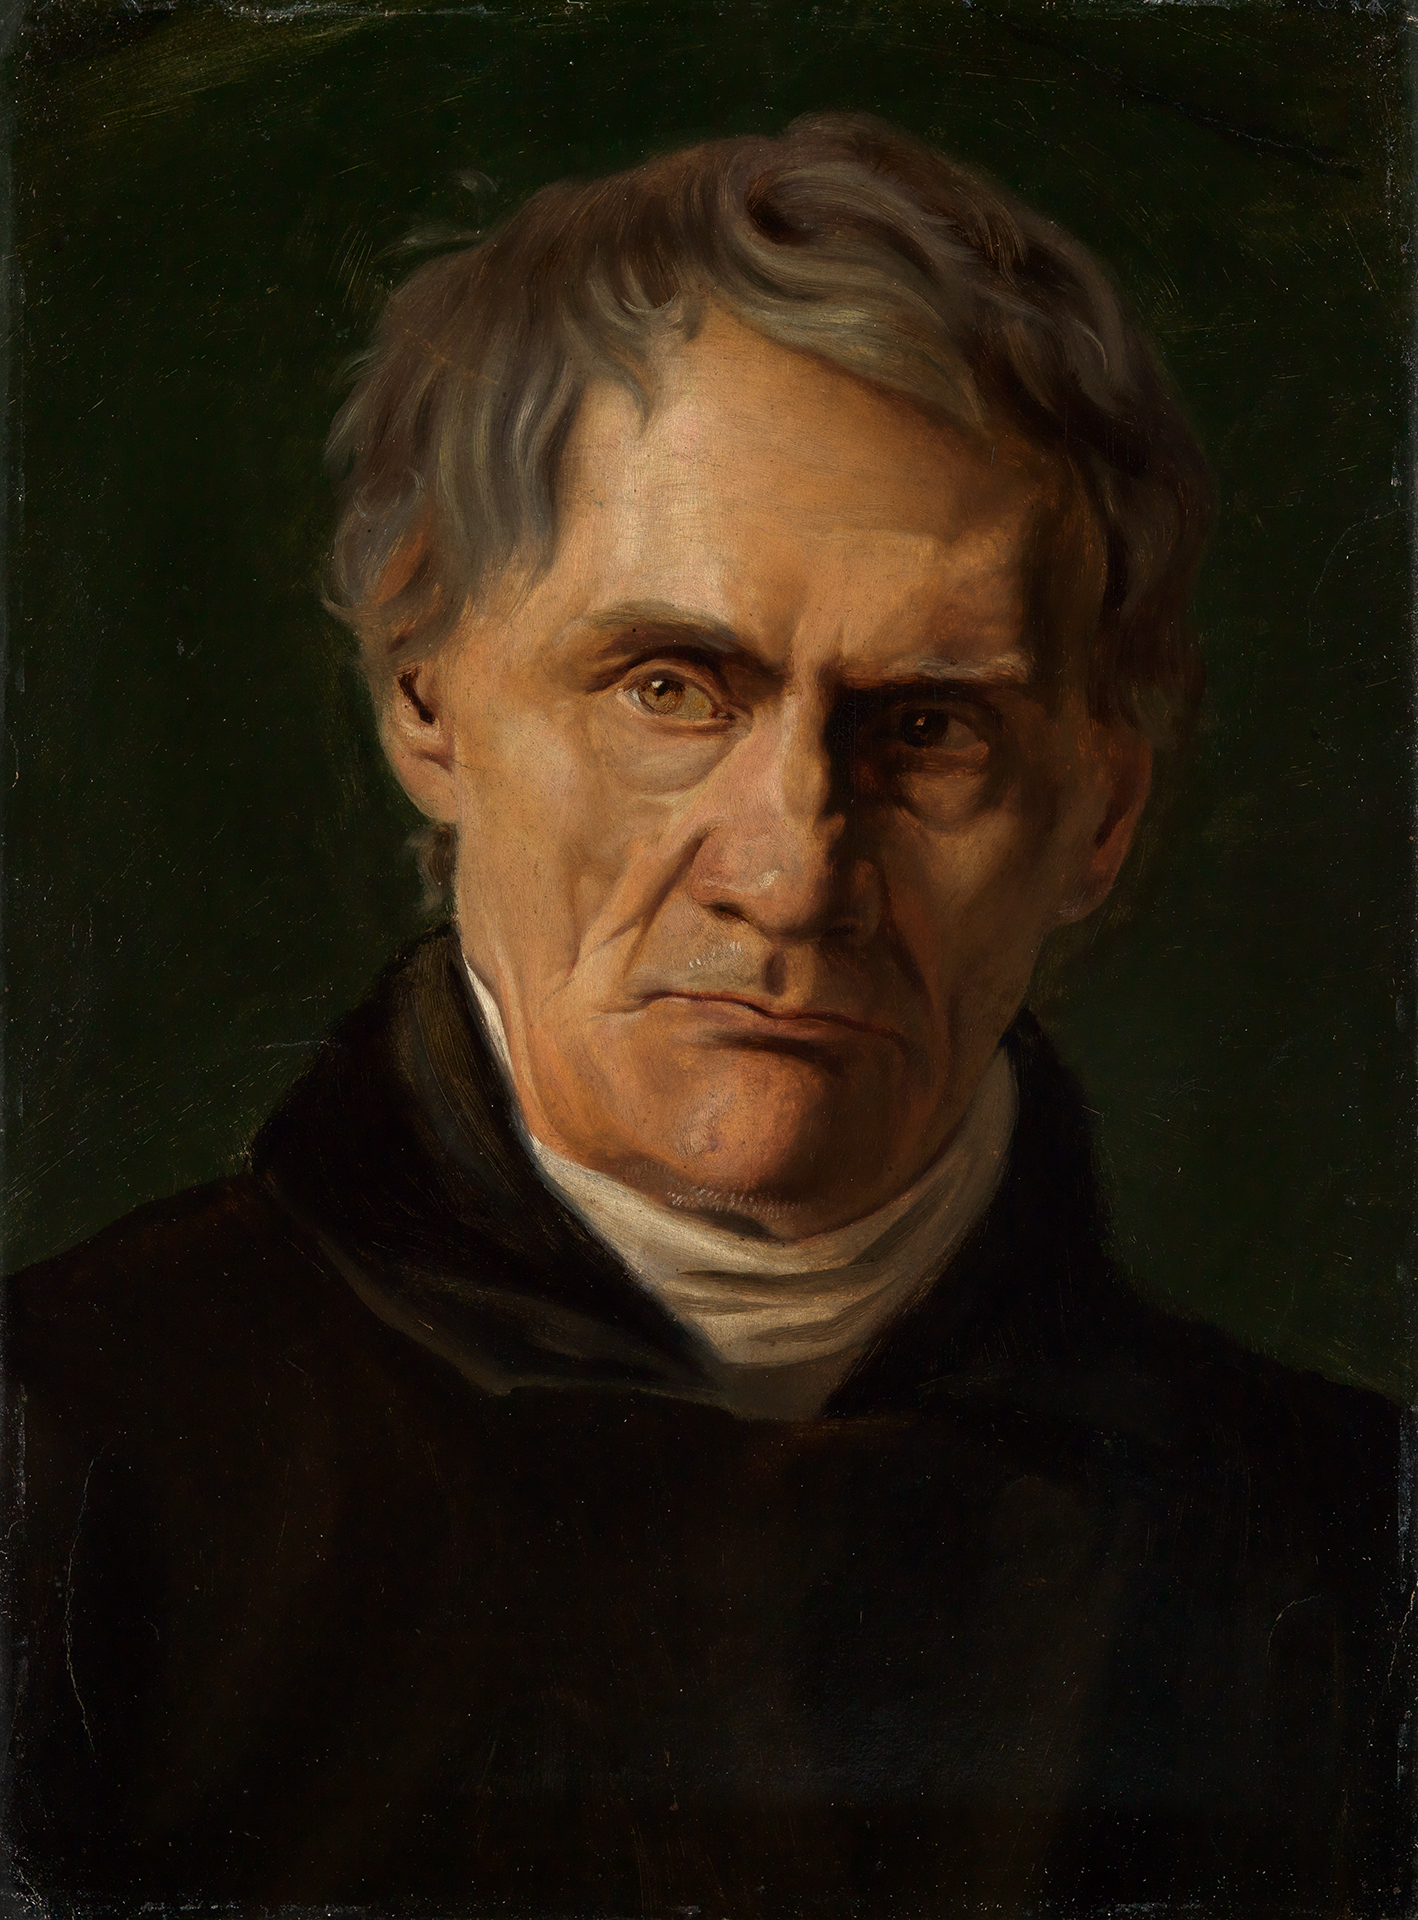 Feuerbachs Porträt eines älteren Herrn. Der Hintergrund und Vordergrund ist sehr dunkel.